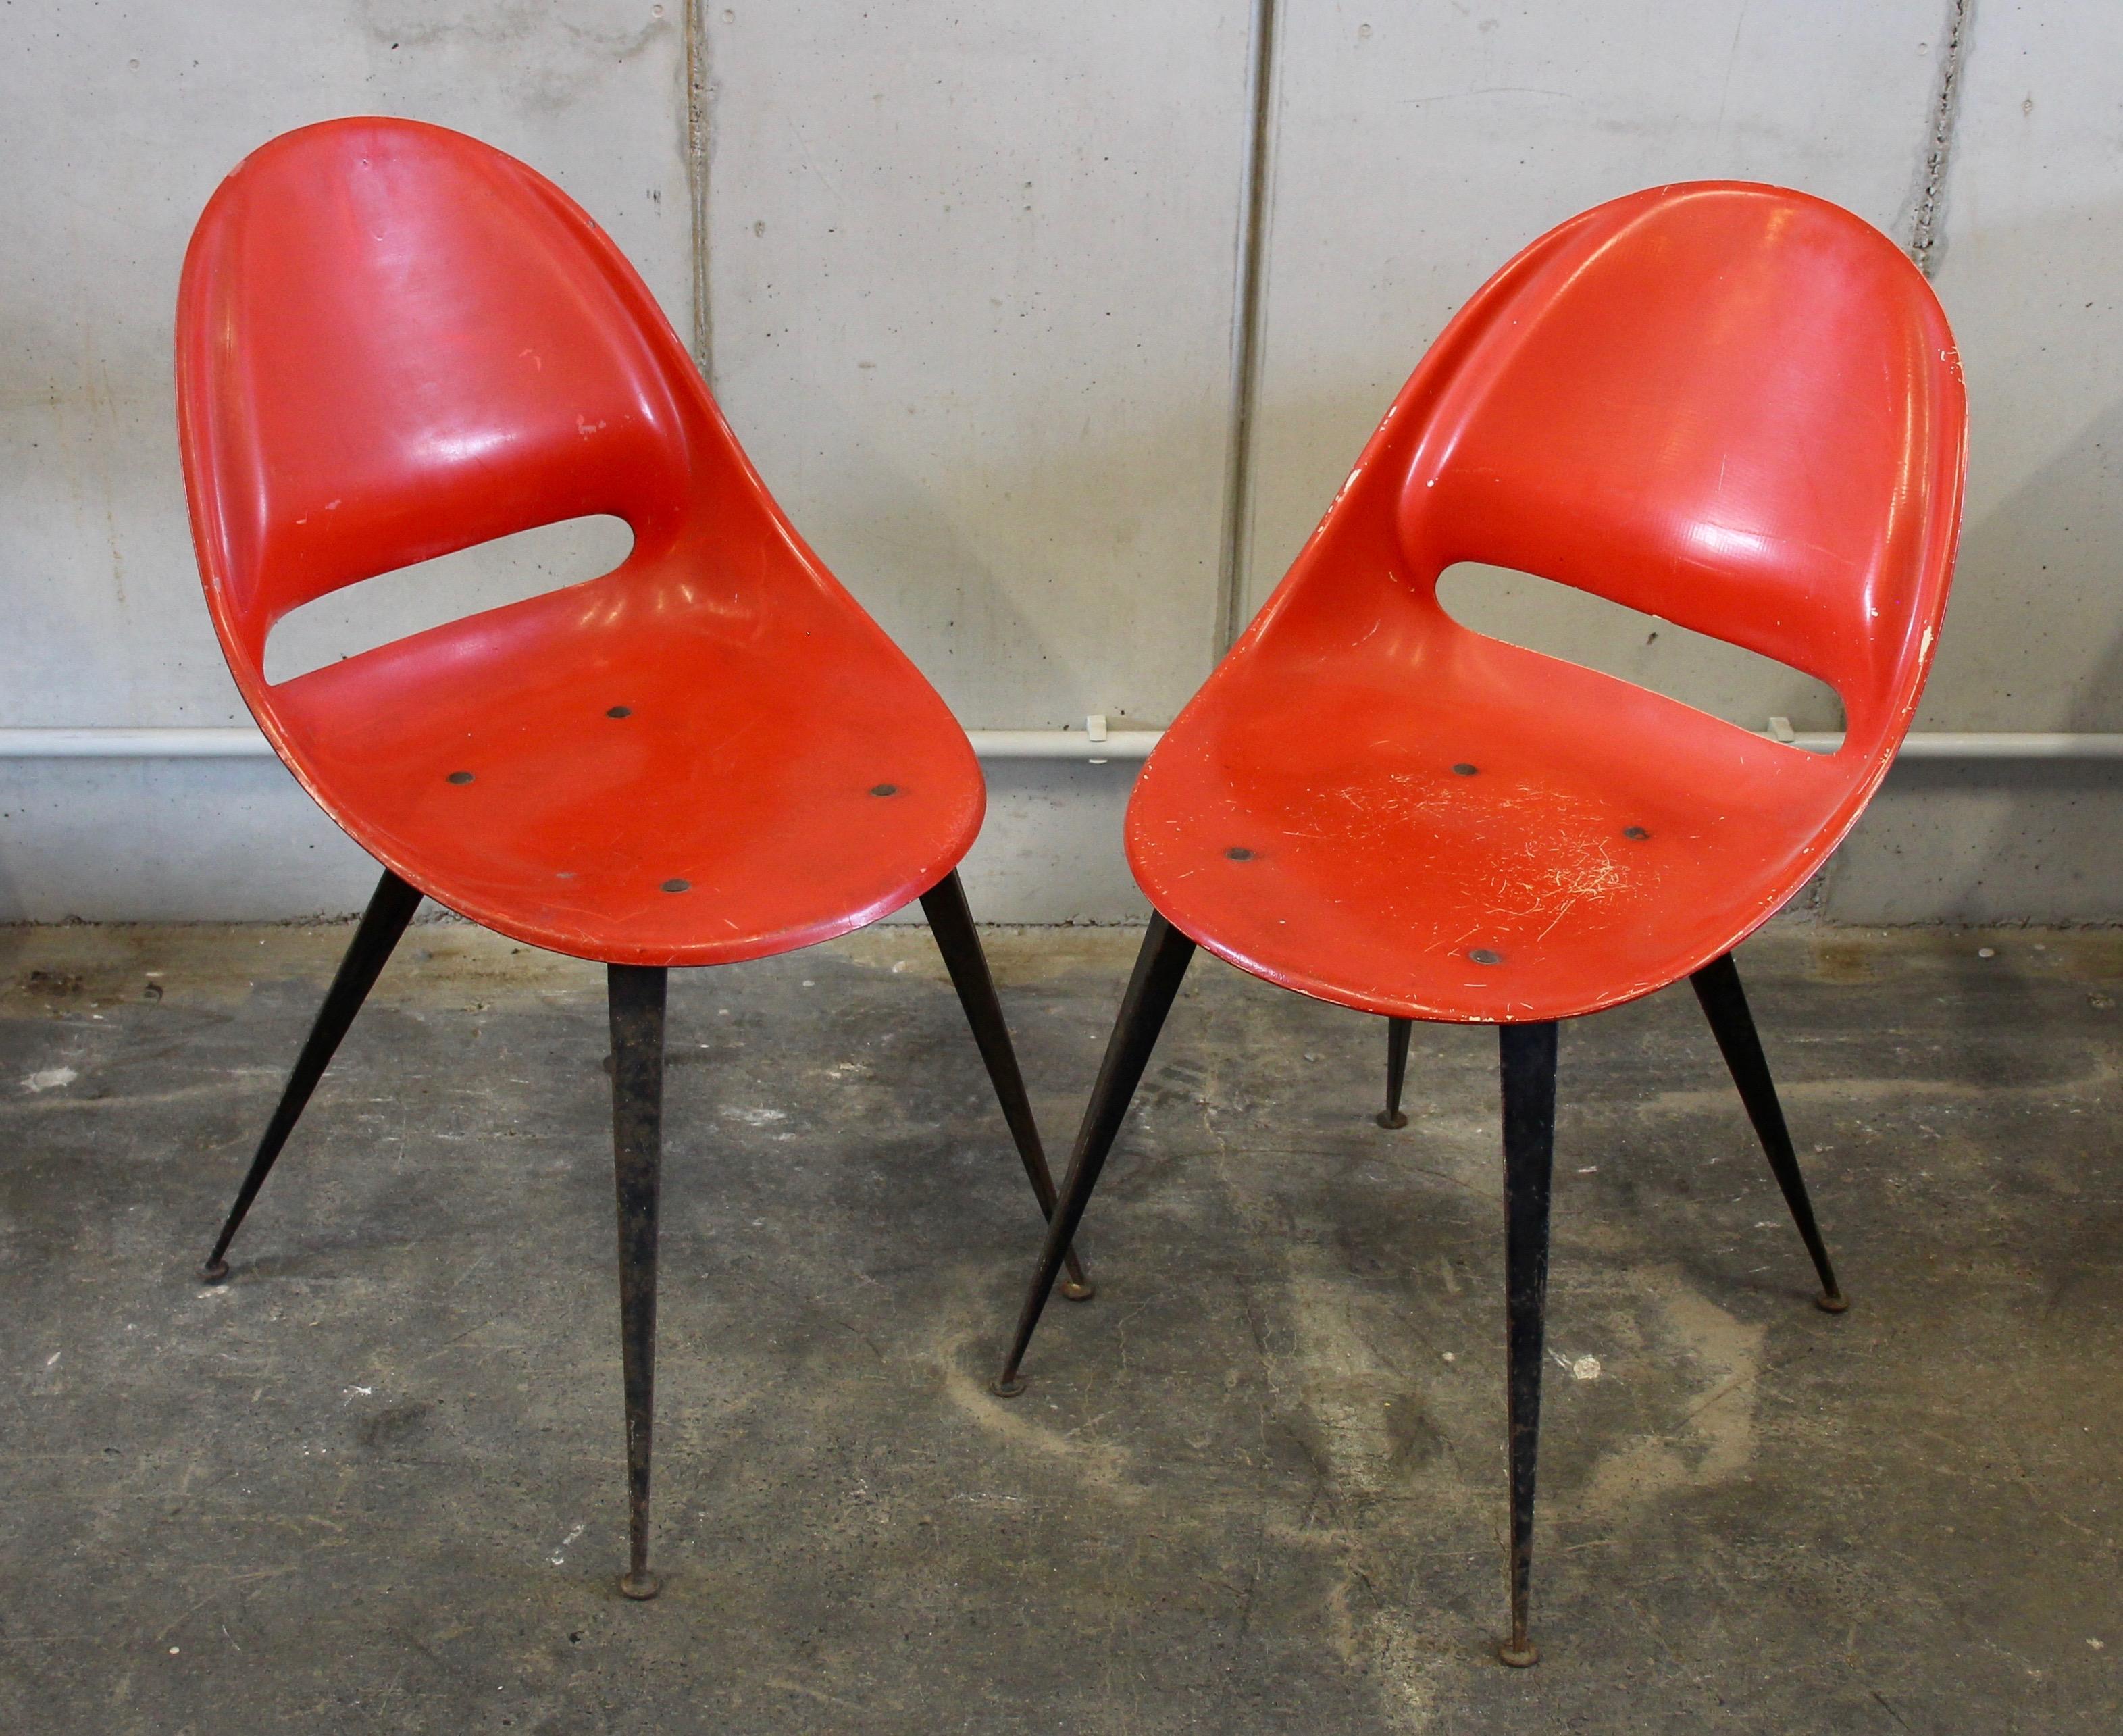 Red Midcentury Fiberglass Chair, Czech Republic 1